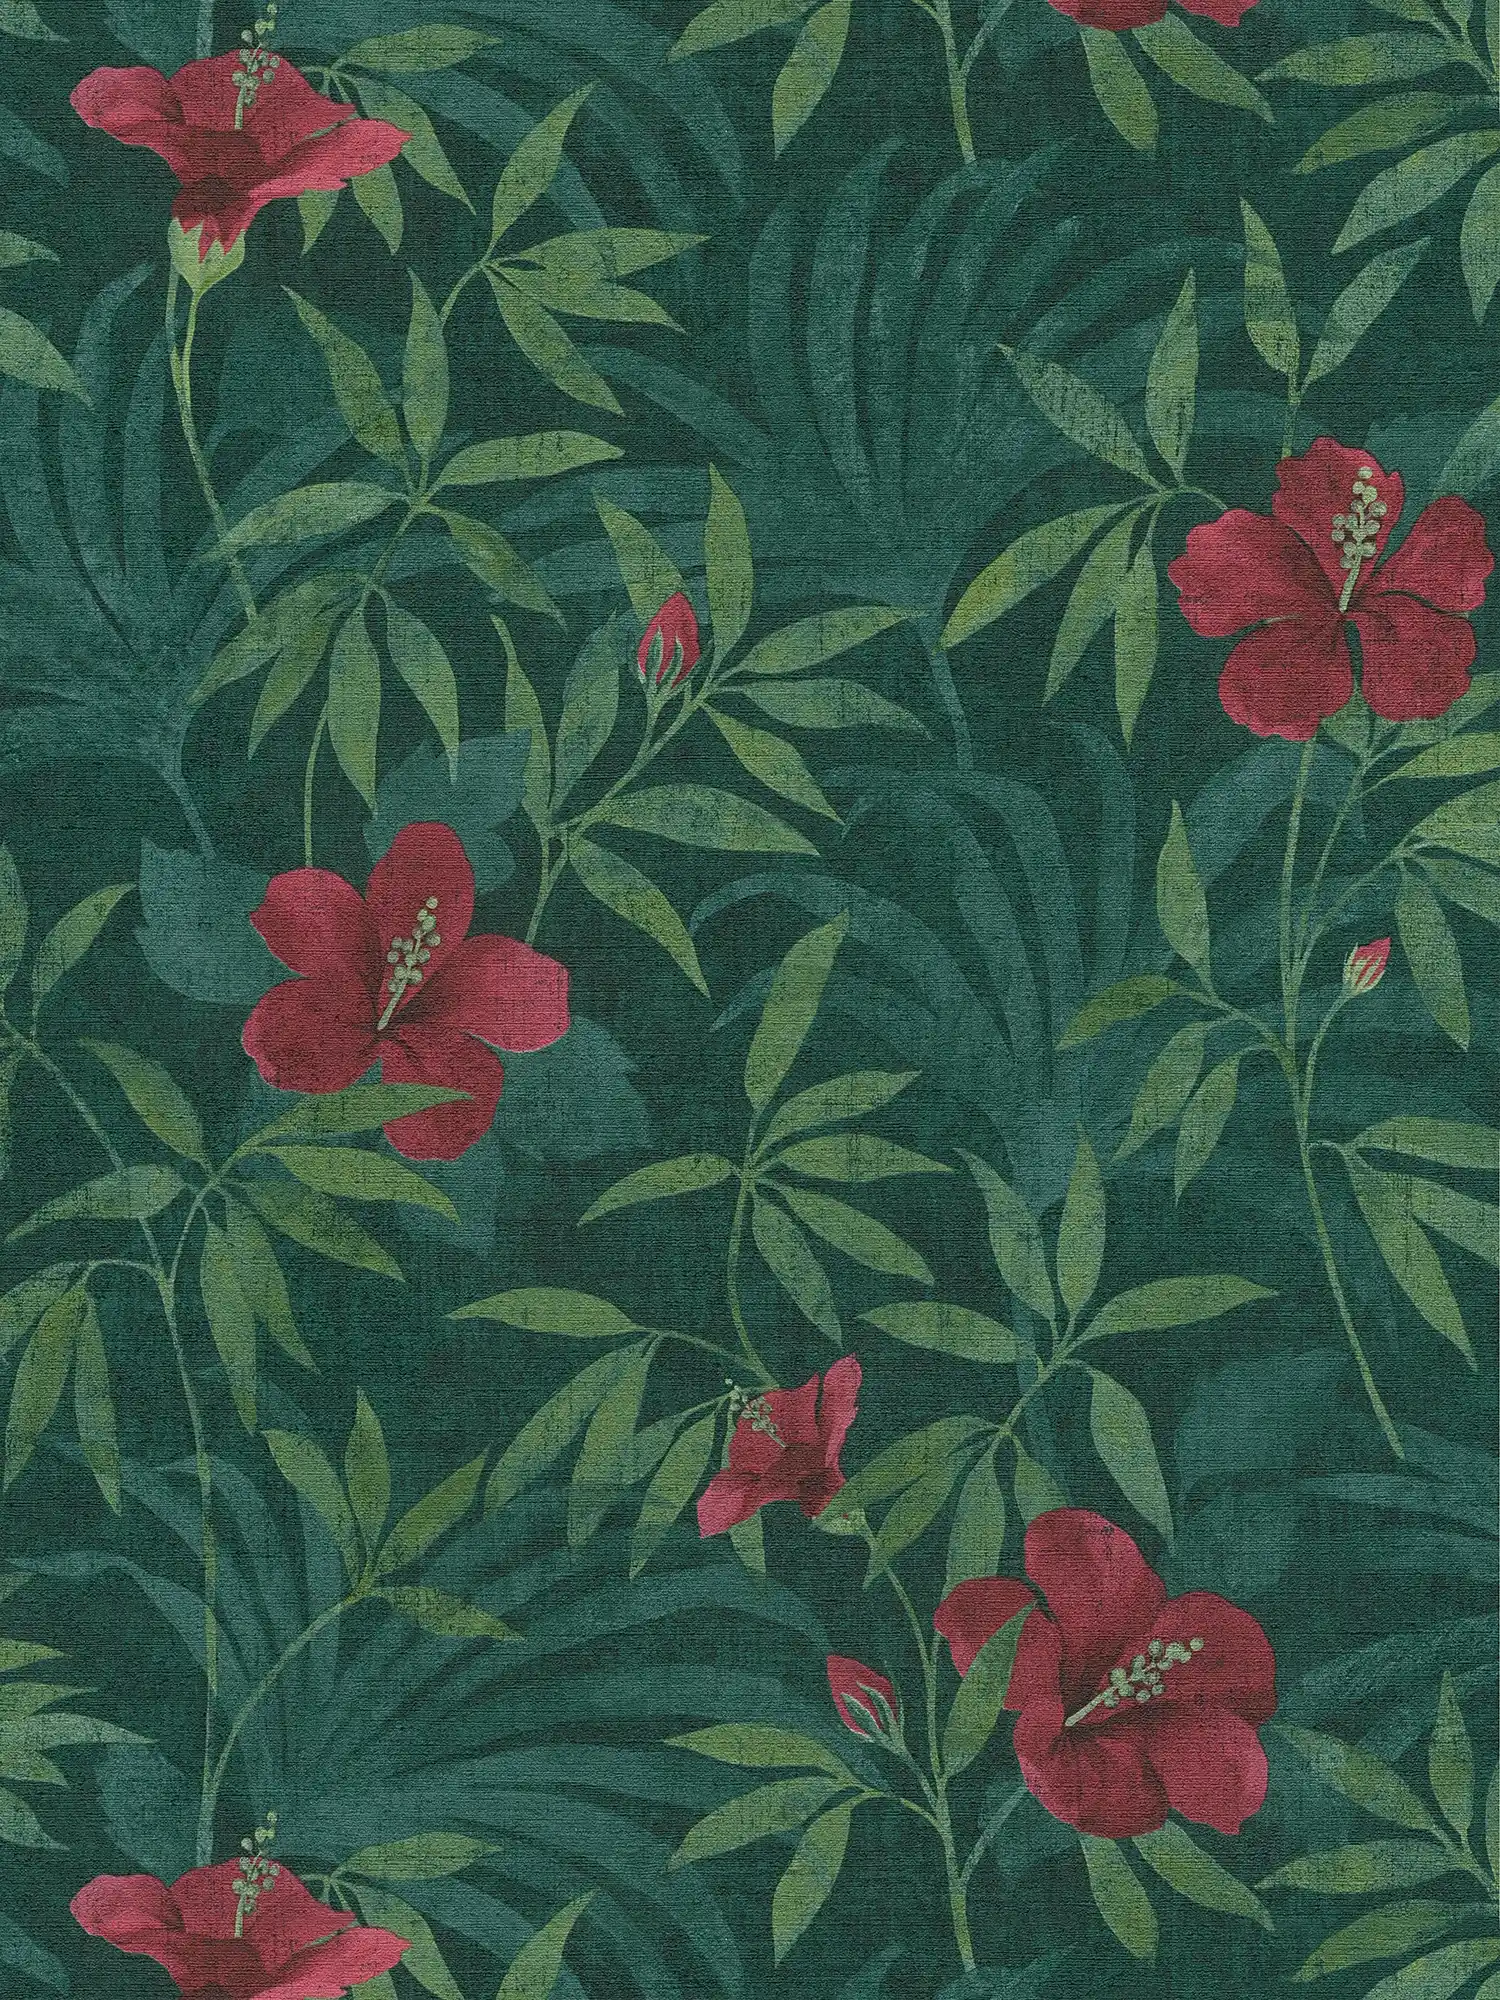 Jungle papier peint jungle verte & fleurs d'hibiscus - vert, rouge
